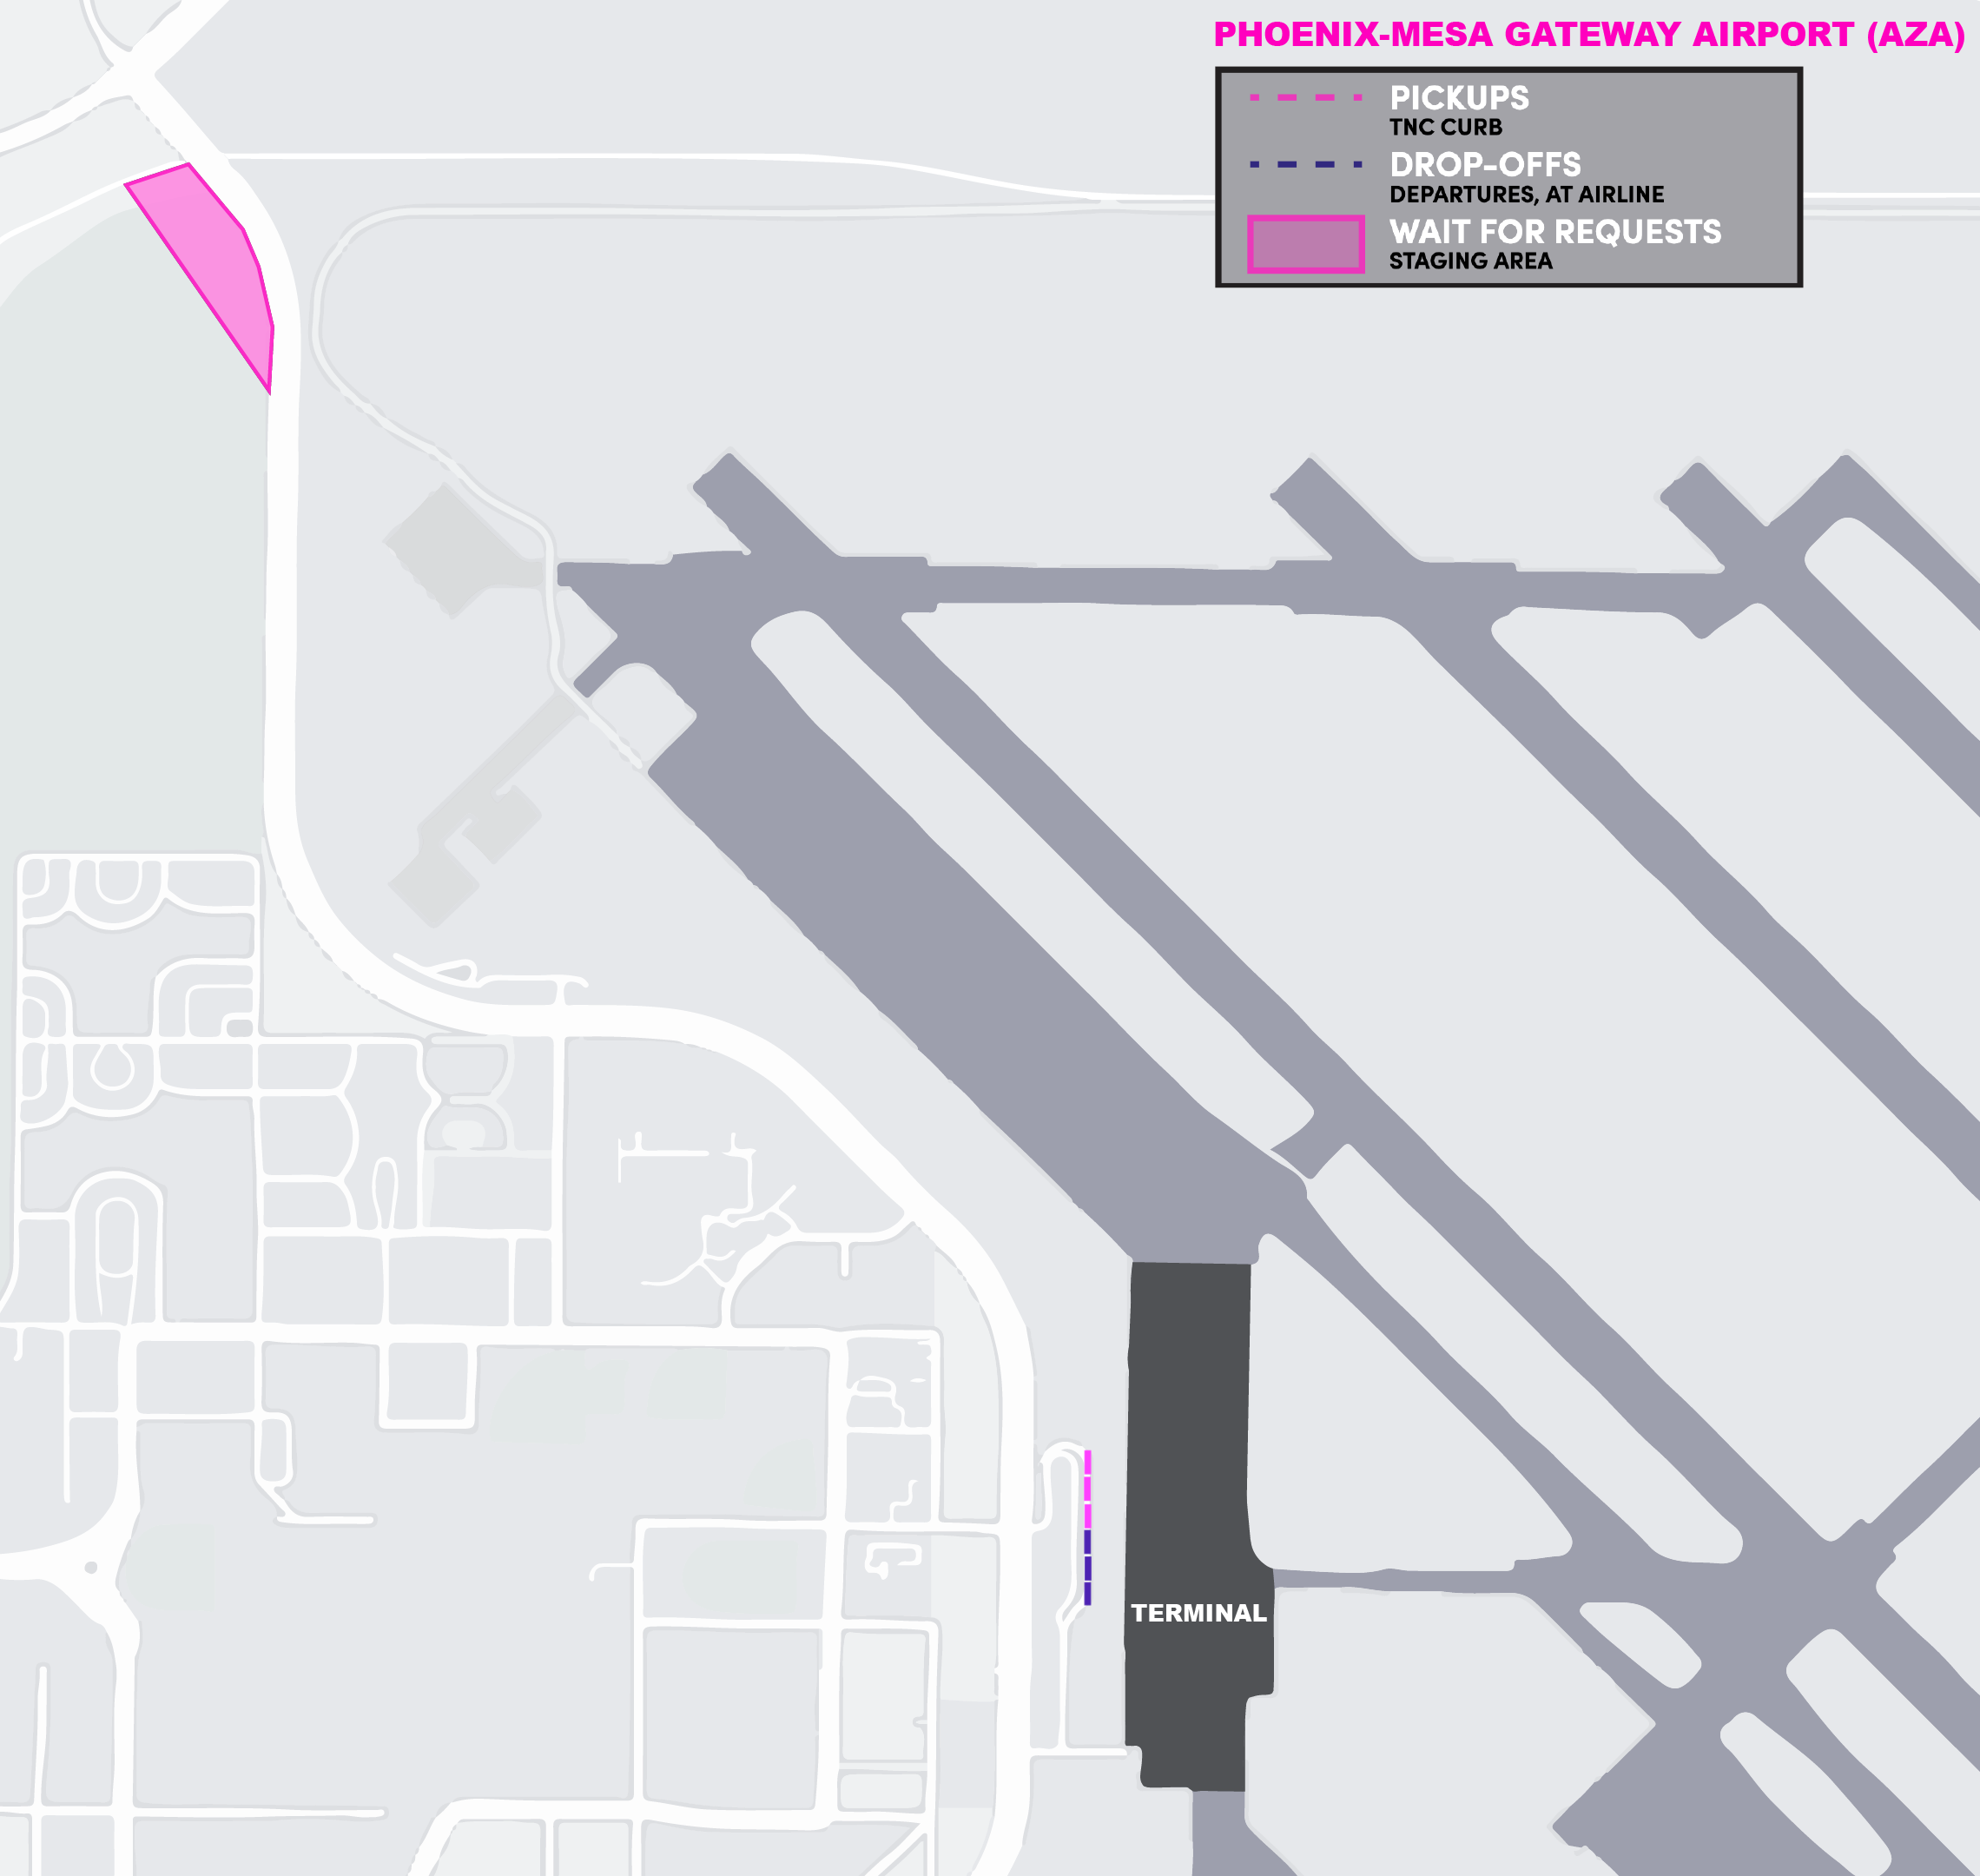 Esta imagen es un mapa del aeropuerto de AZA. Incluye el área de espera, y las zonas para recoger y dejar pasajeros.